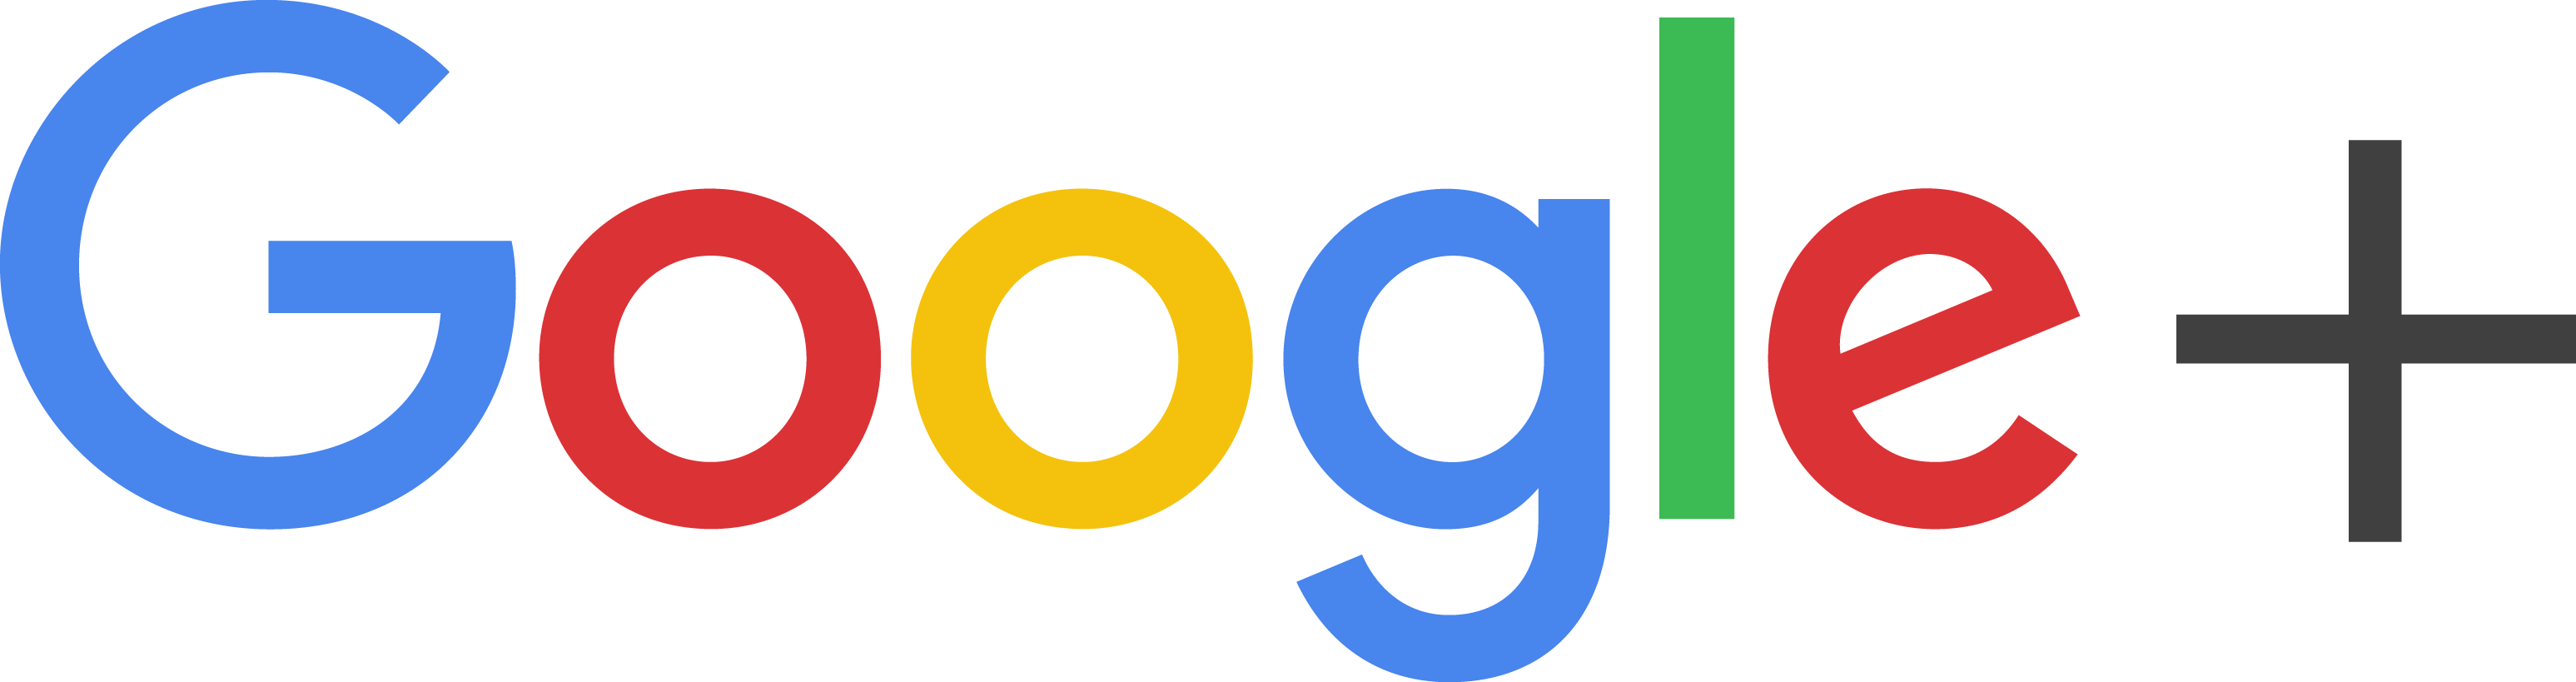 Goggle Plus Logo - Google Olus Logo Png Image